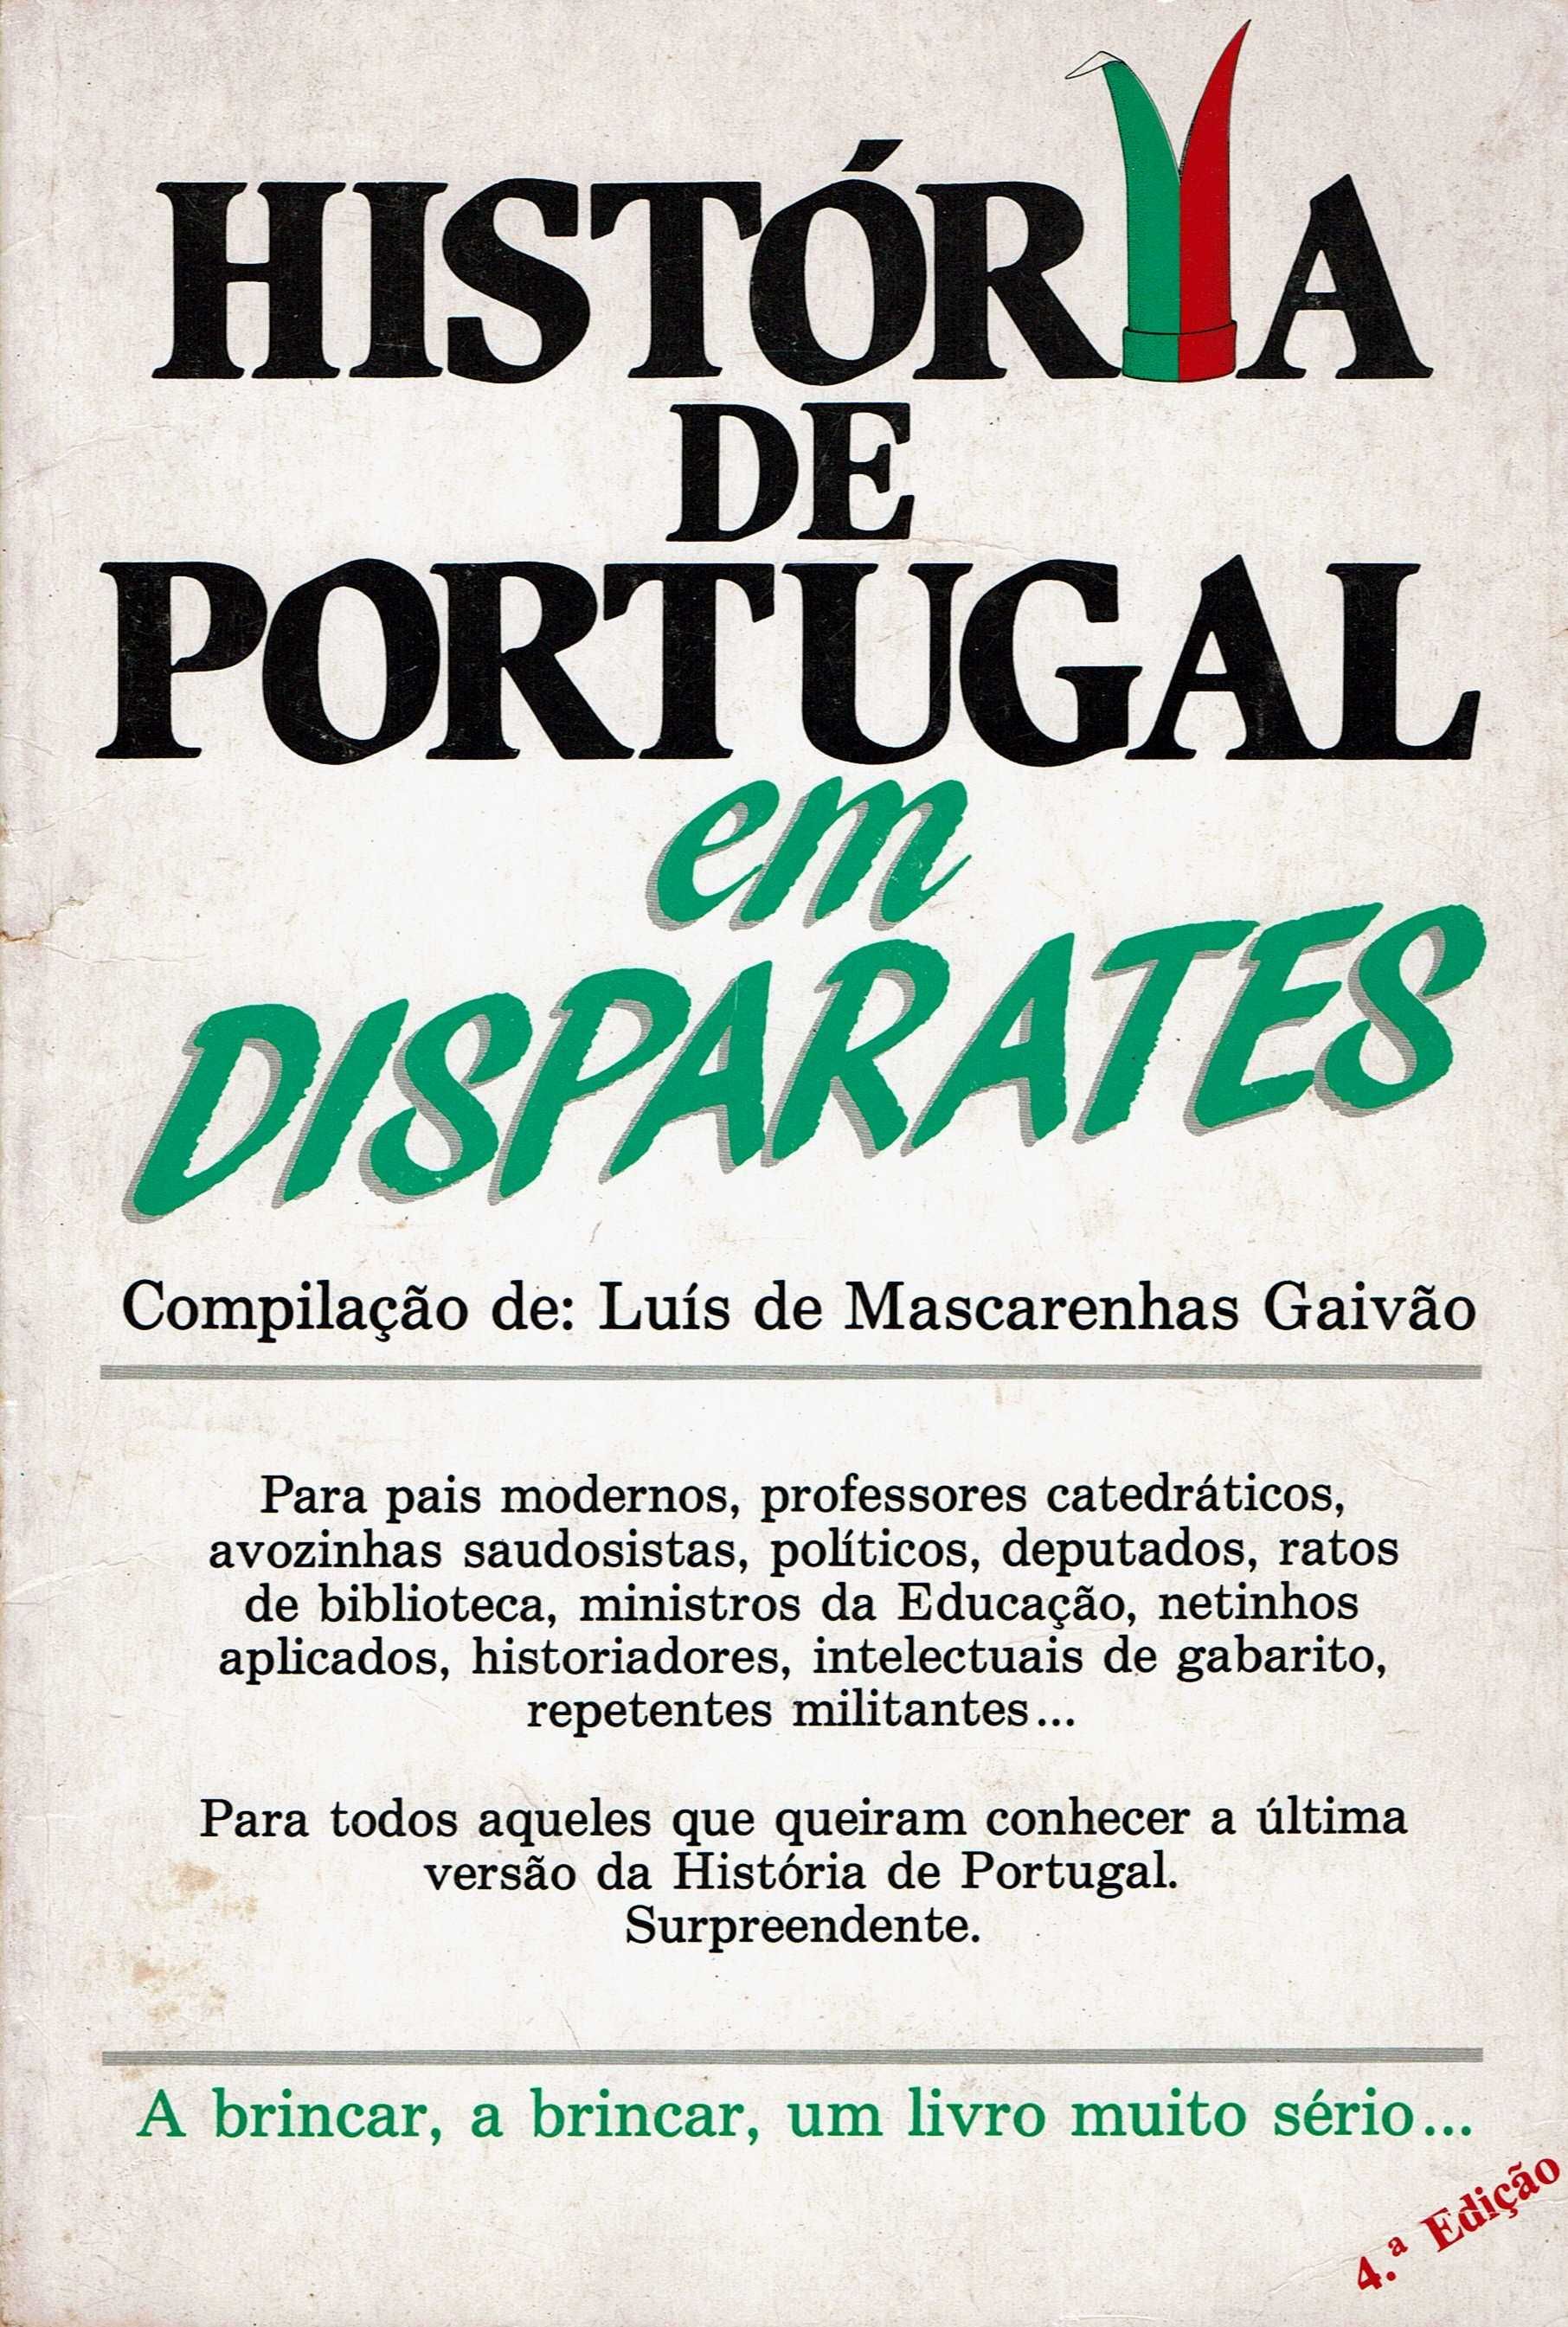 "História de Portugal em disparates" - Luis Mascarenhas Gaivão